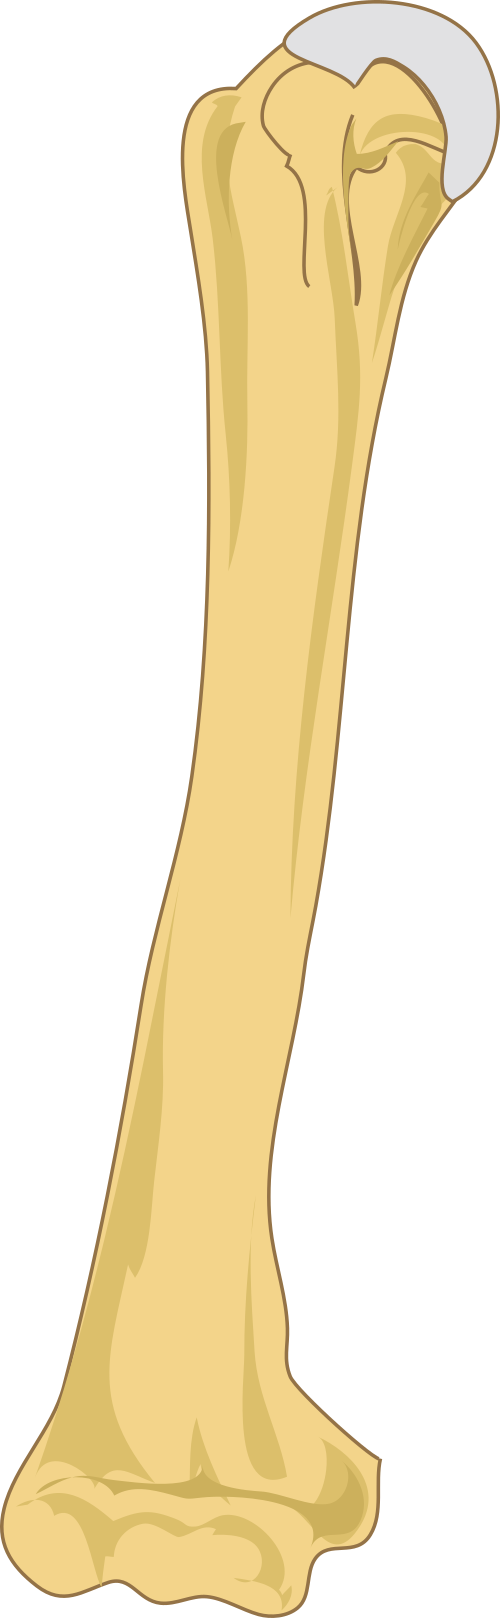 Humerus bone